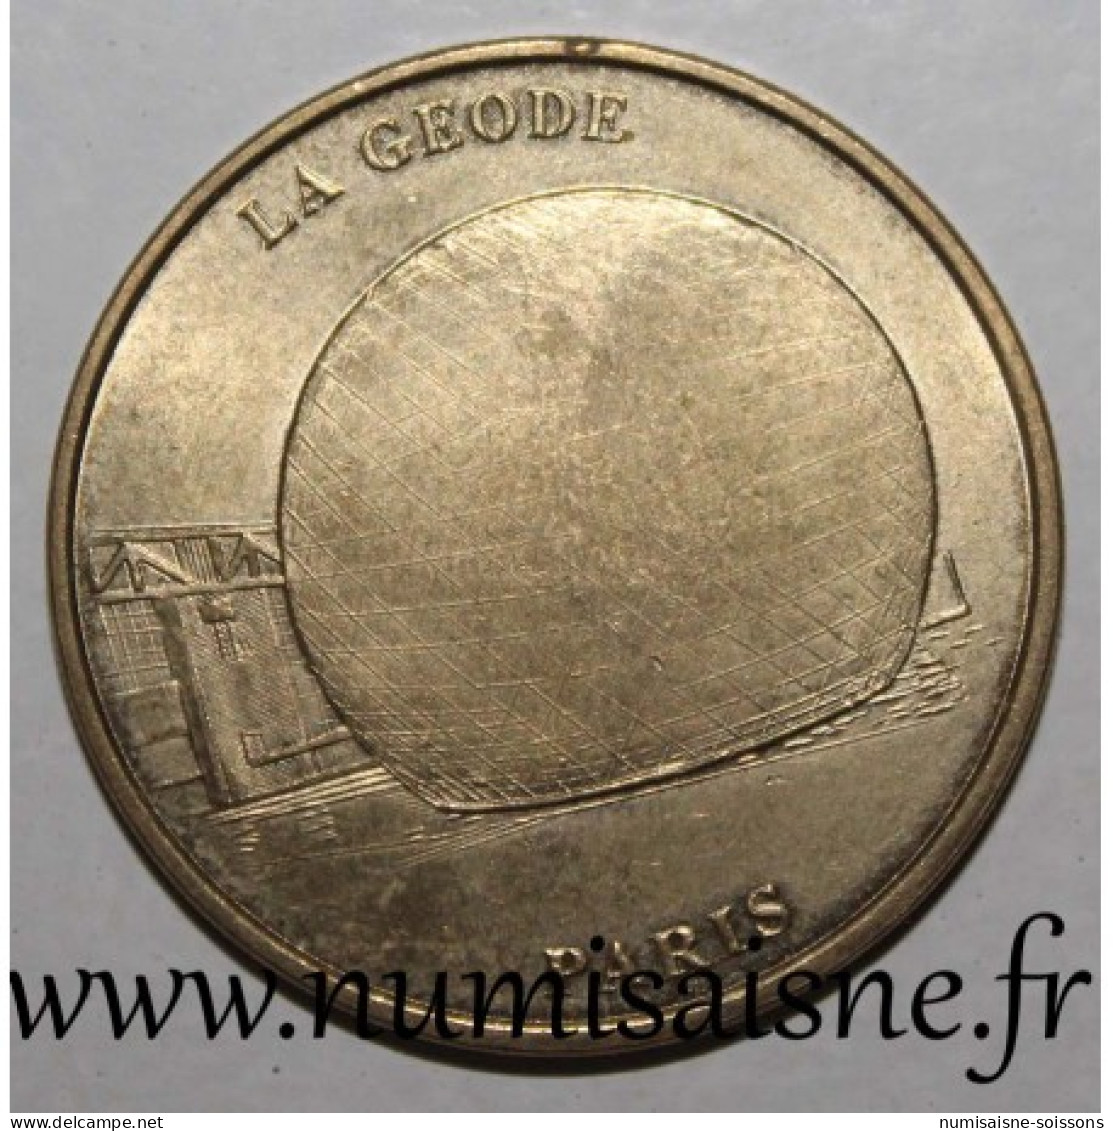 75 - PARIS - LA GEODE - MDP - 1998 - Non-datés